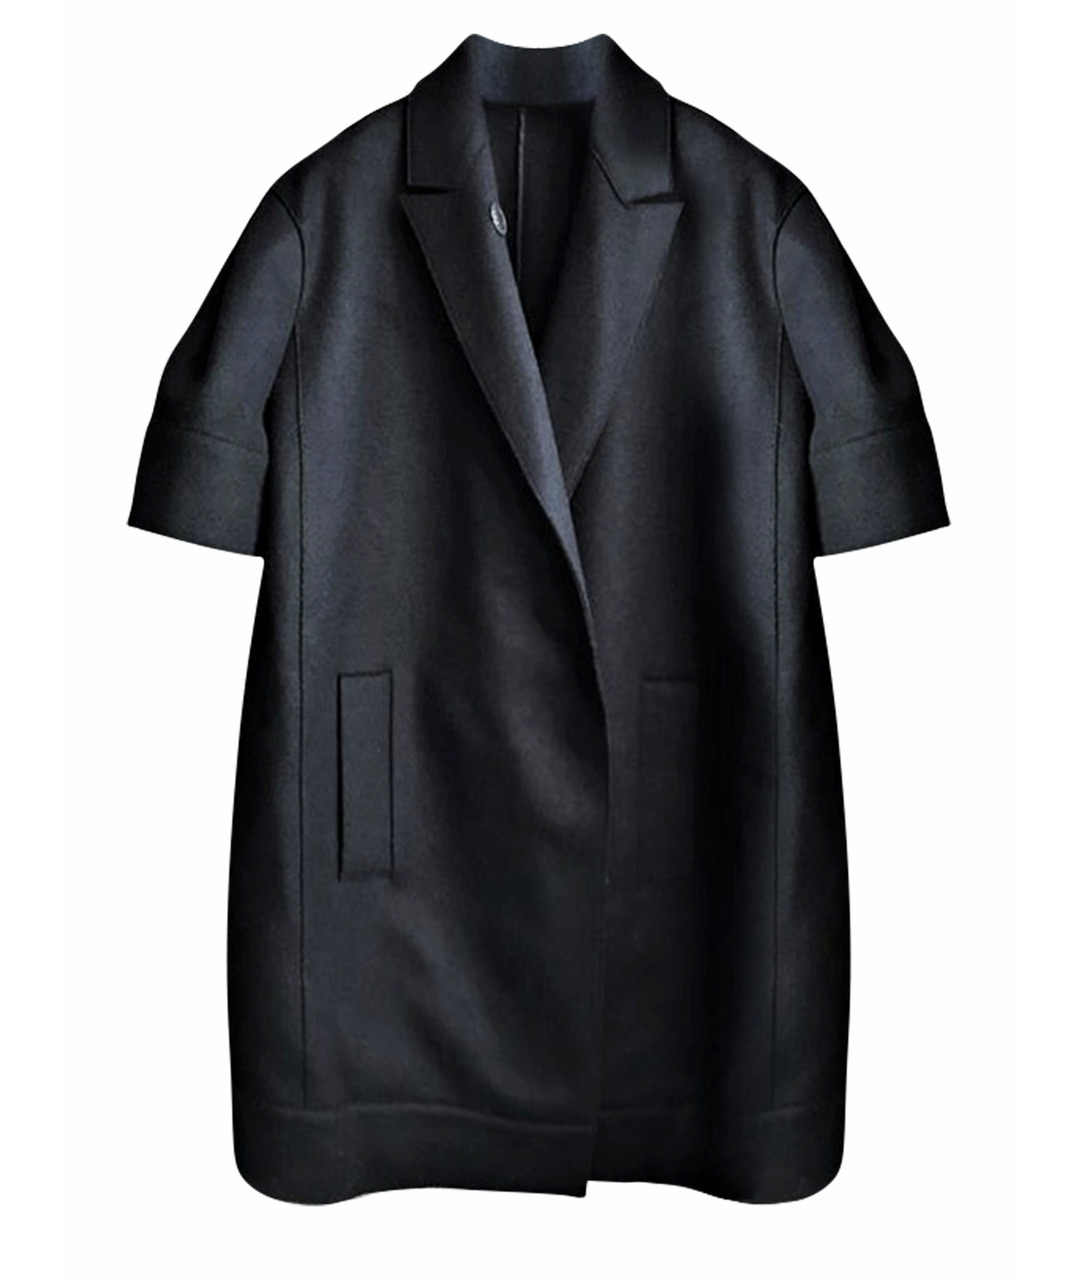 IRFE Черное шерстяное пальто, фото 1